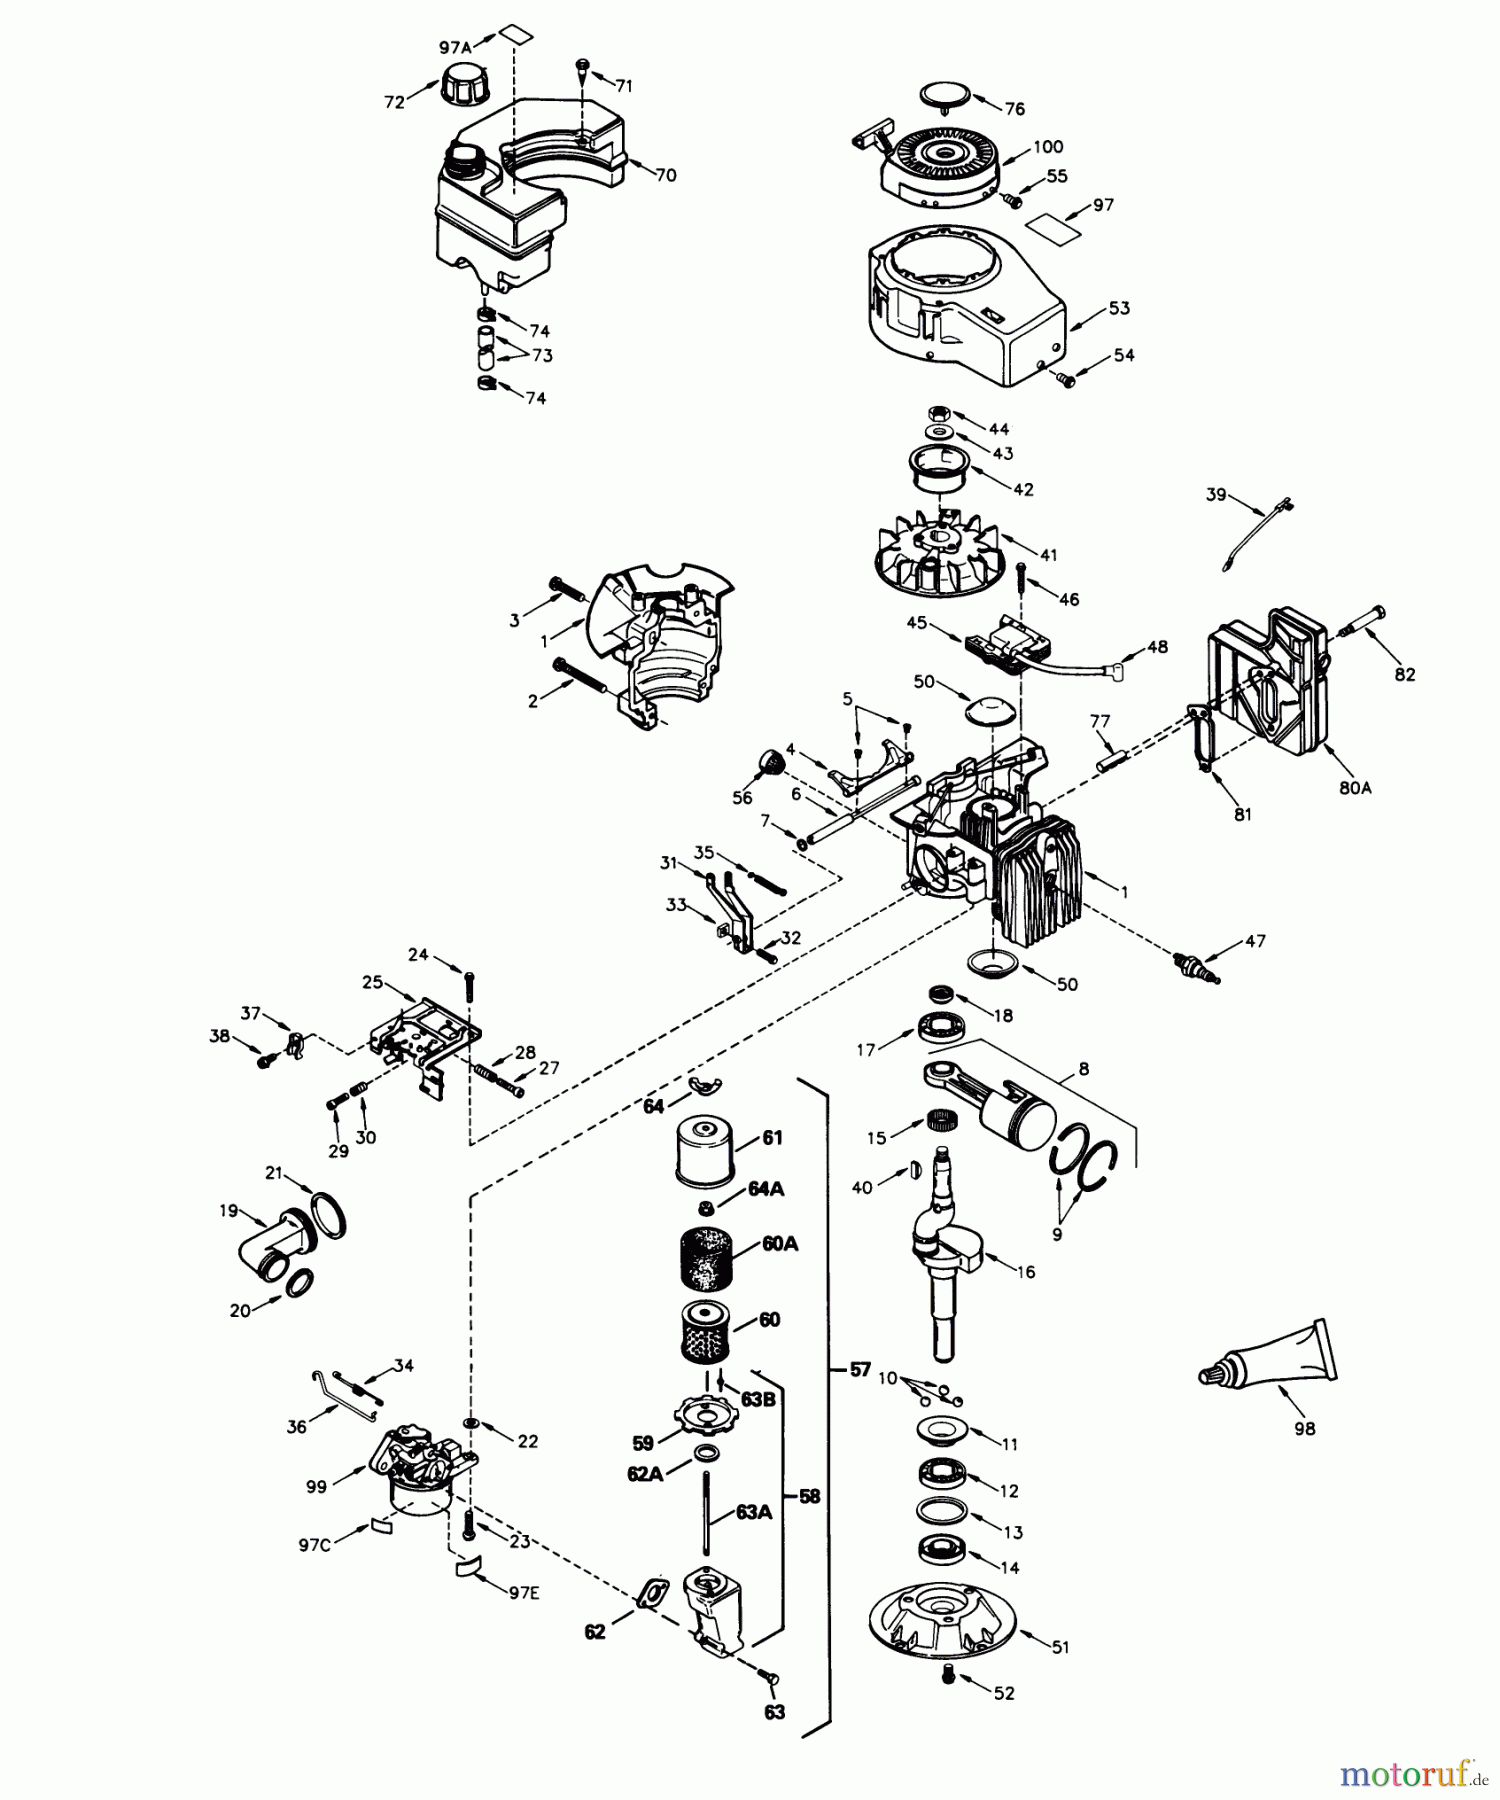  Toro Neu Mowers, Walk-Behind Seite 1 16551 - Toro Lawnmower, 1989 (9000001-9999999) ENGINE TECUMSEH MODEL NO. TVS840-8016B